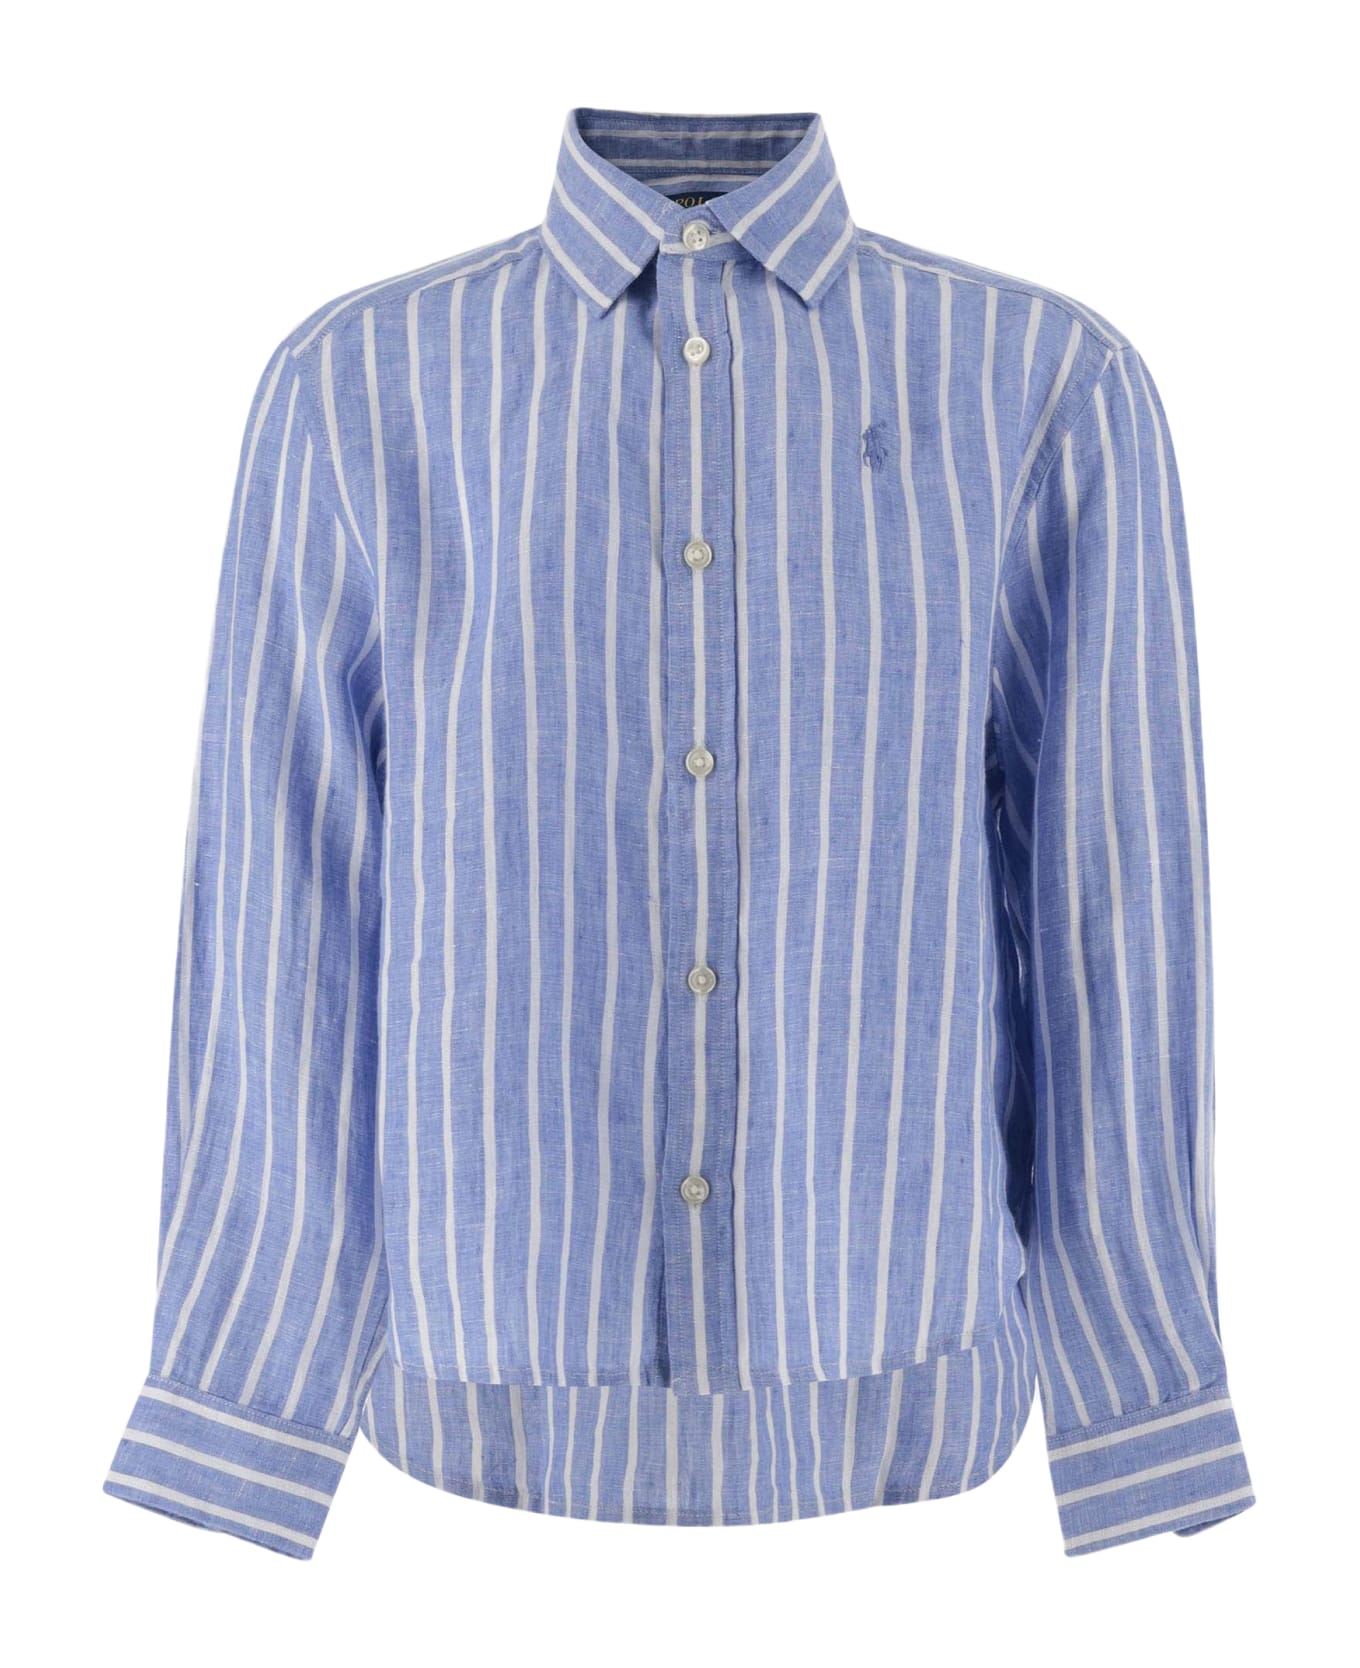 Polo Ralph Lauren Striped Linen Shirt With Logo - Blue シャツ